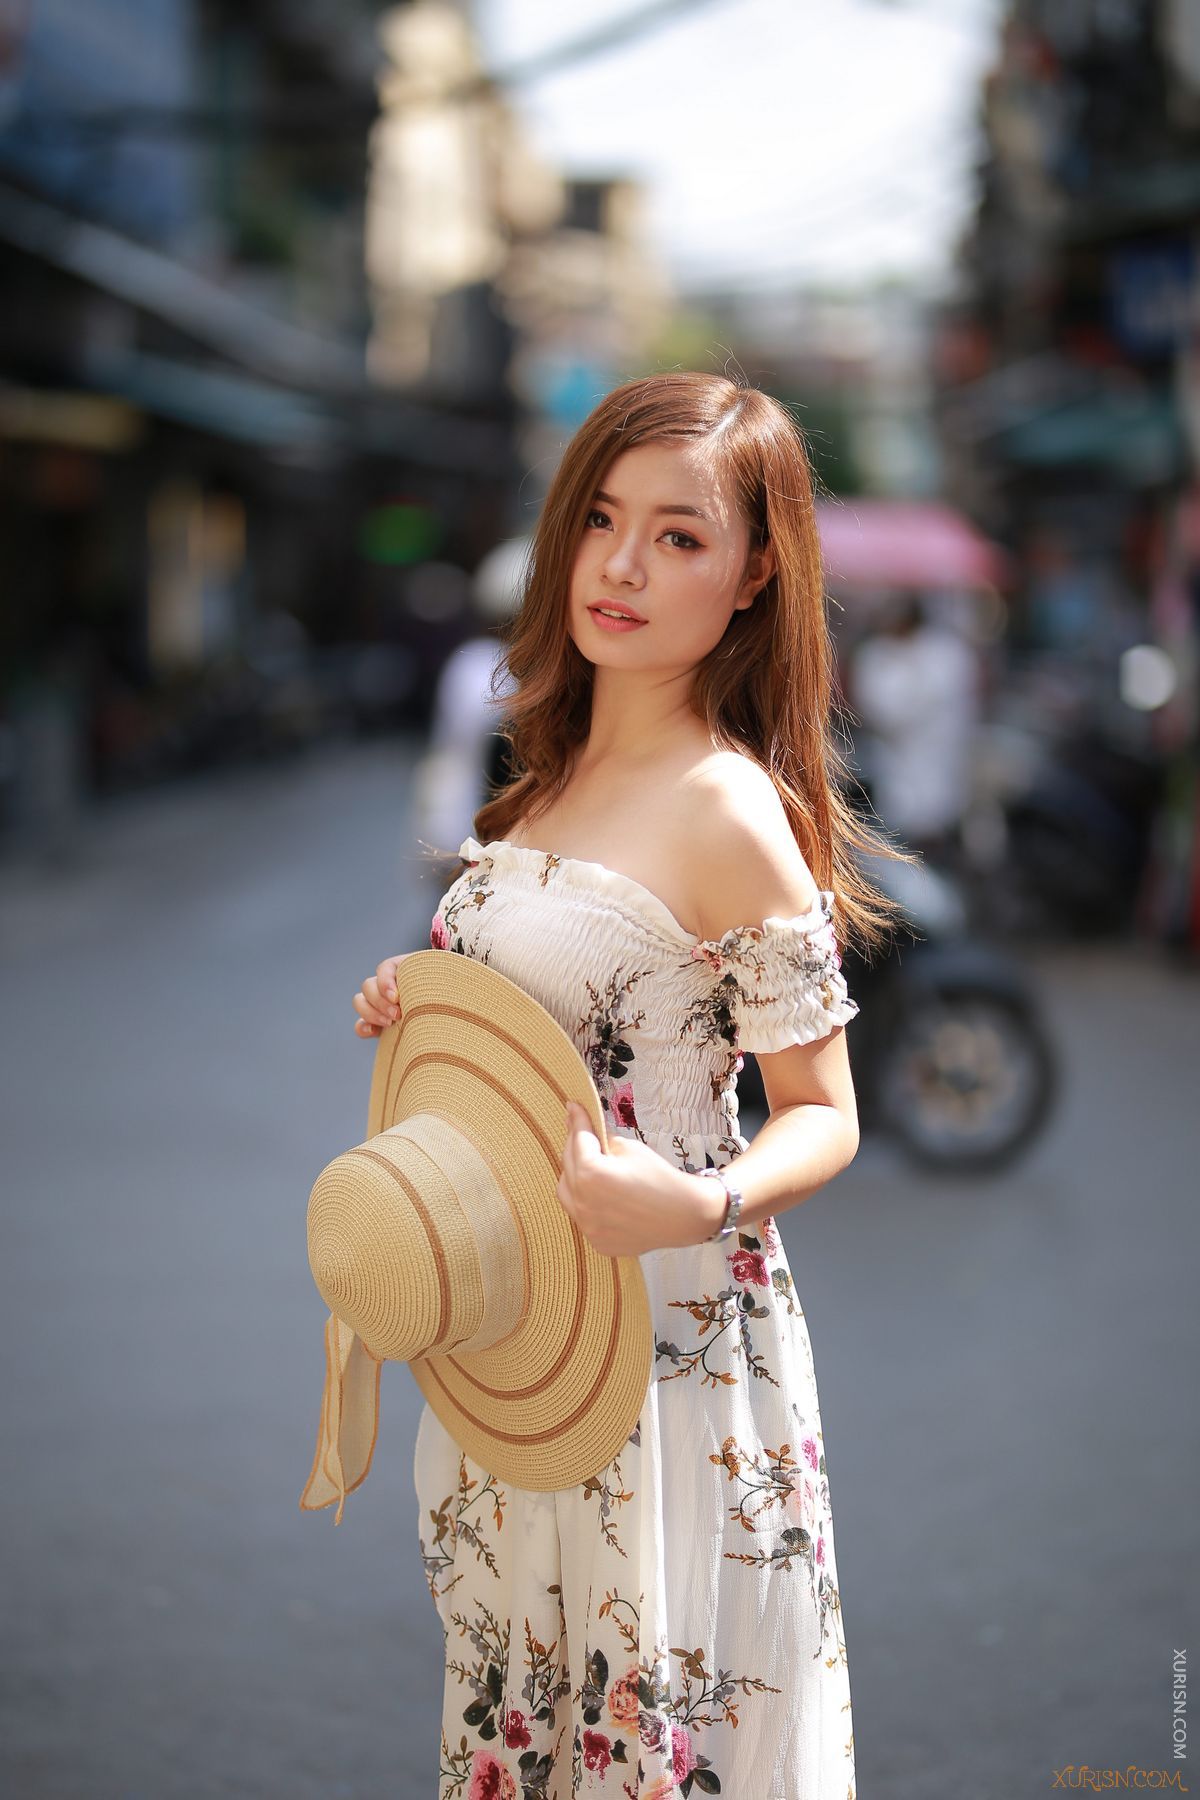 美图欣赏-8张越南美女的街拍写真RAW原图欣赏Canon EOS 6D(10)